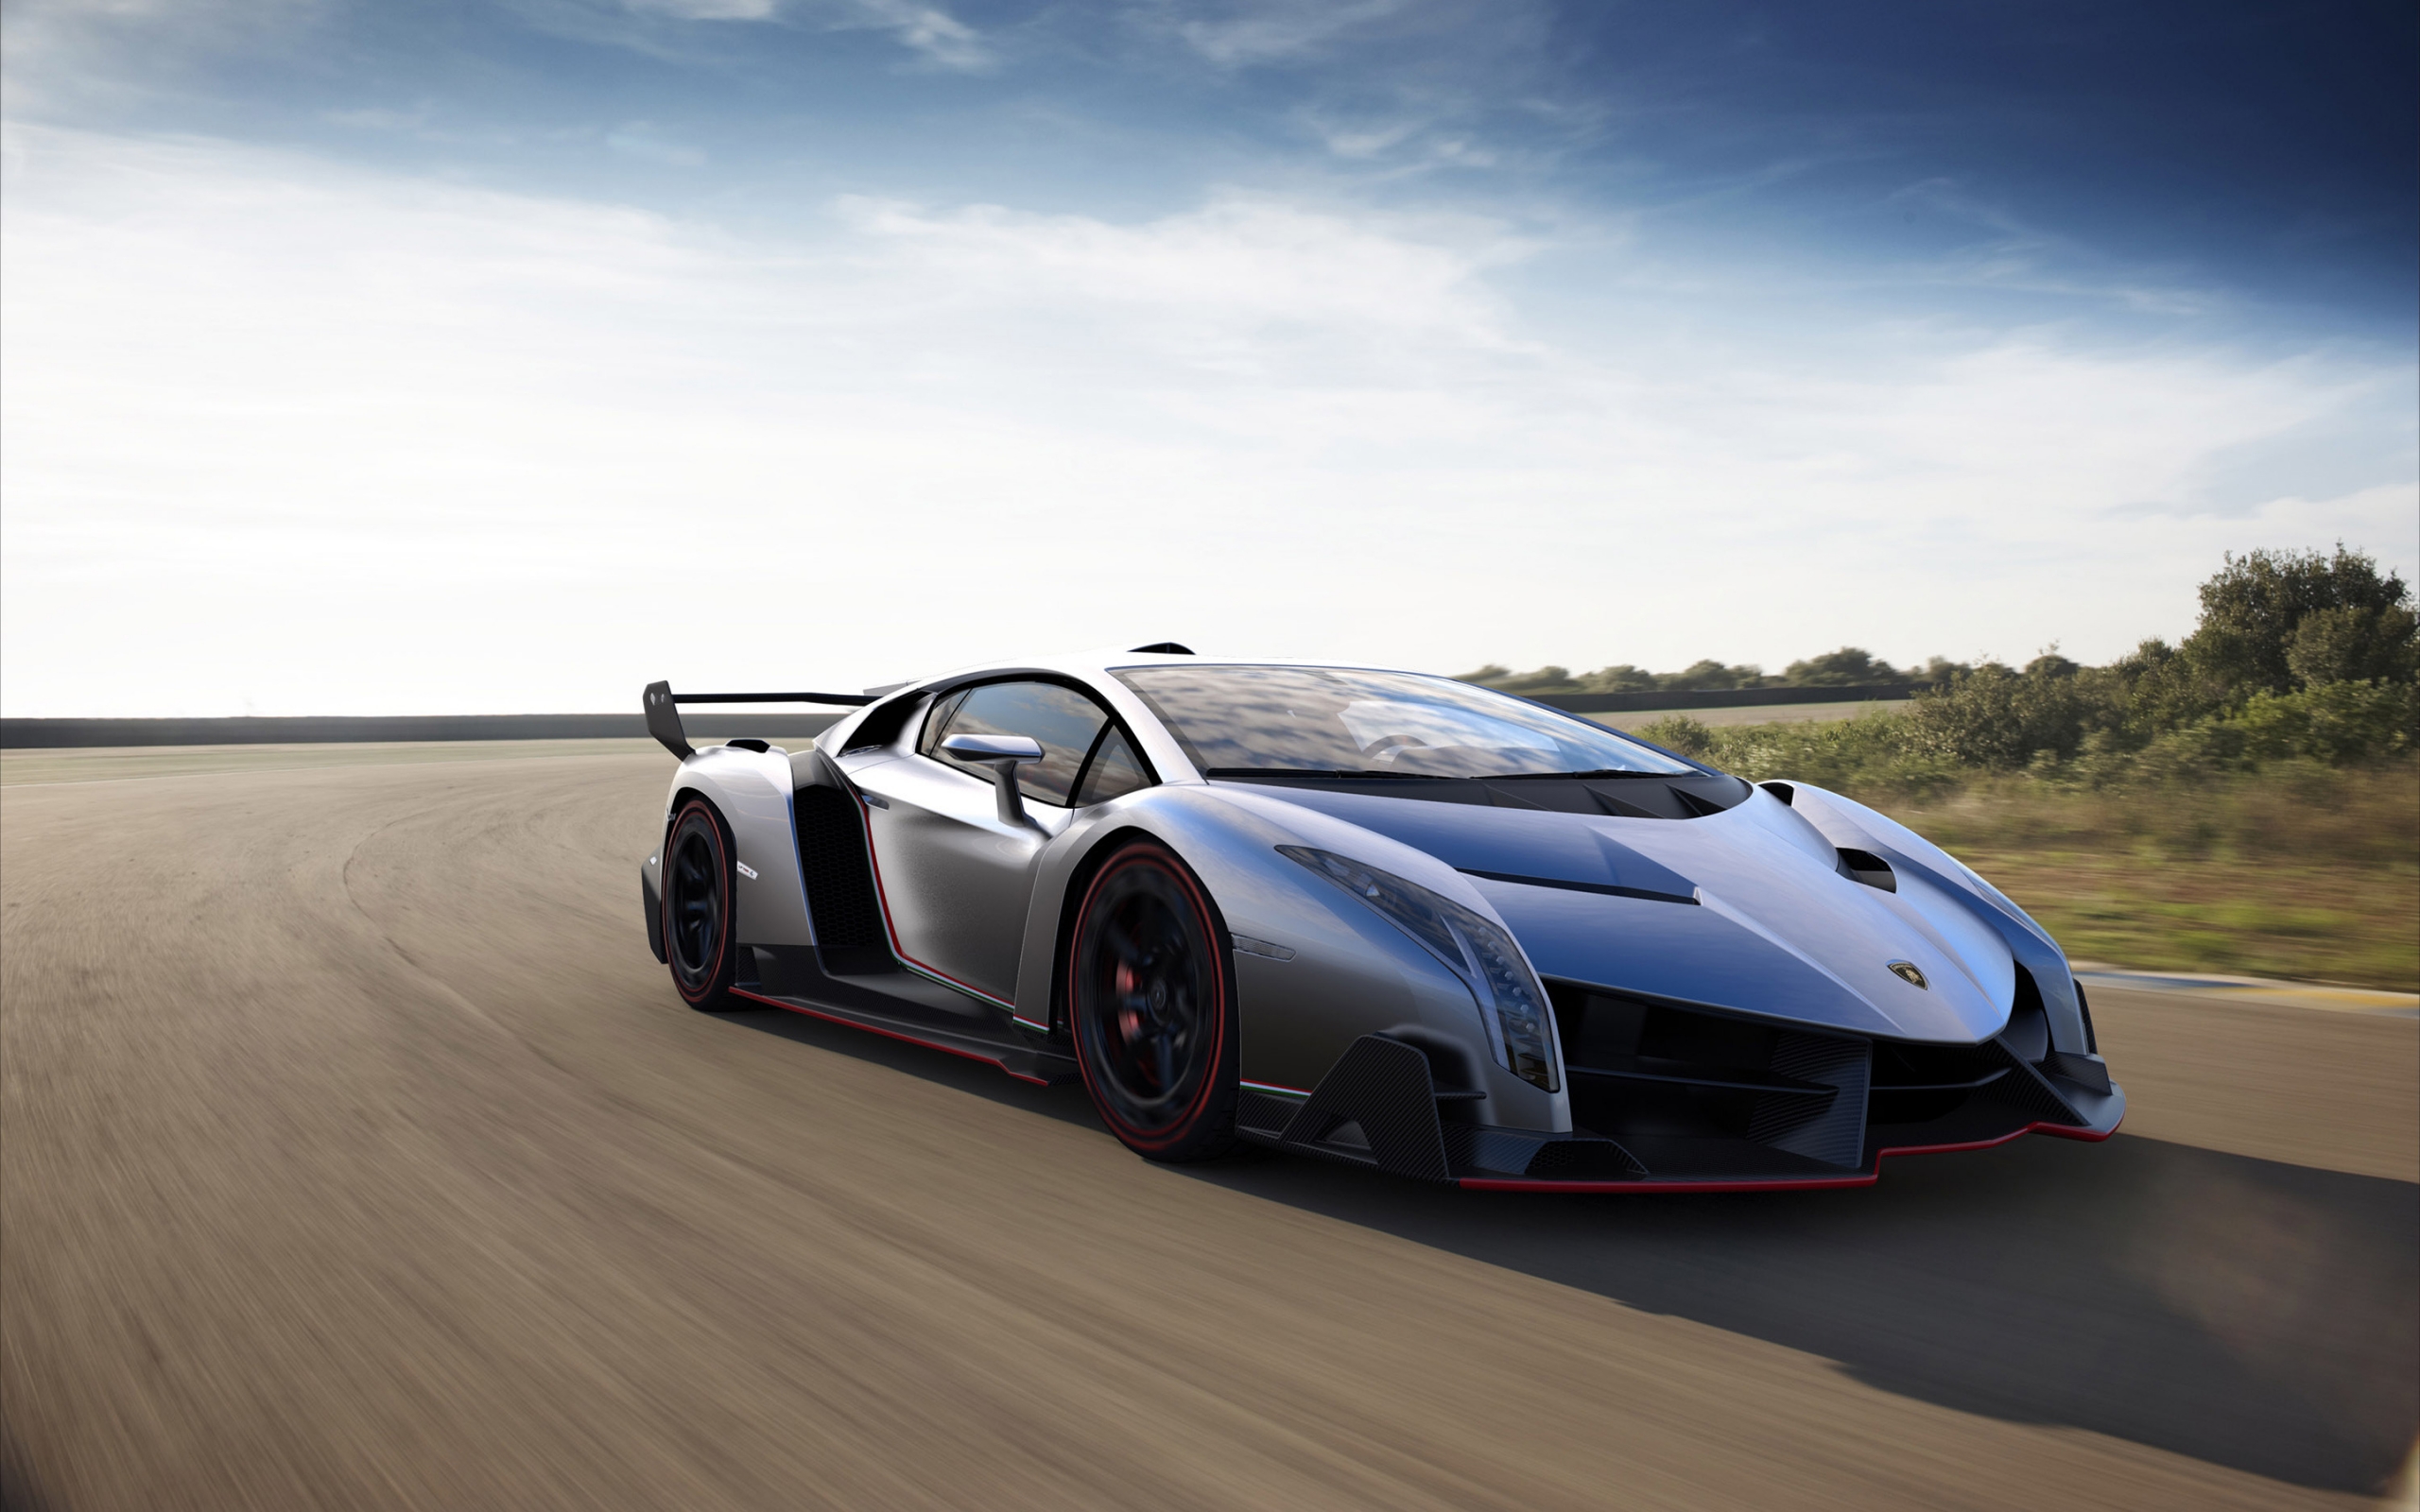 Lamborghini Veneno for 2560 x 1600 widescreen resolution